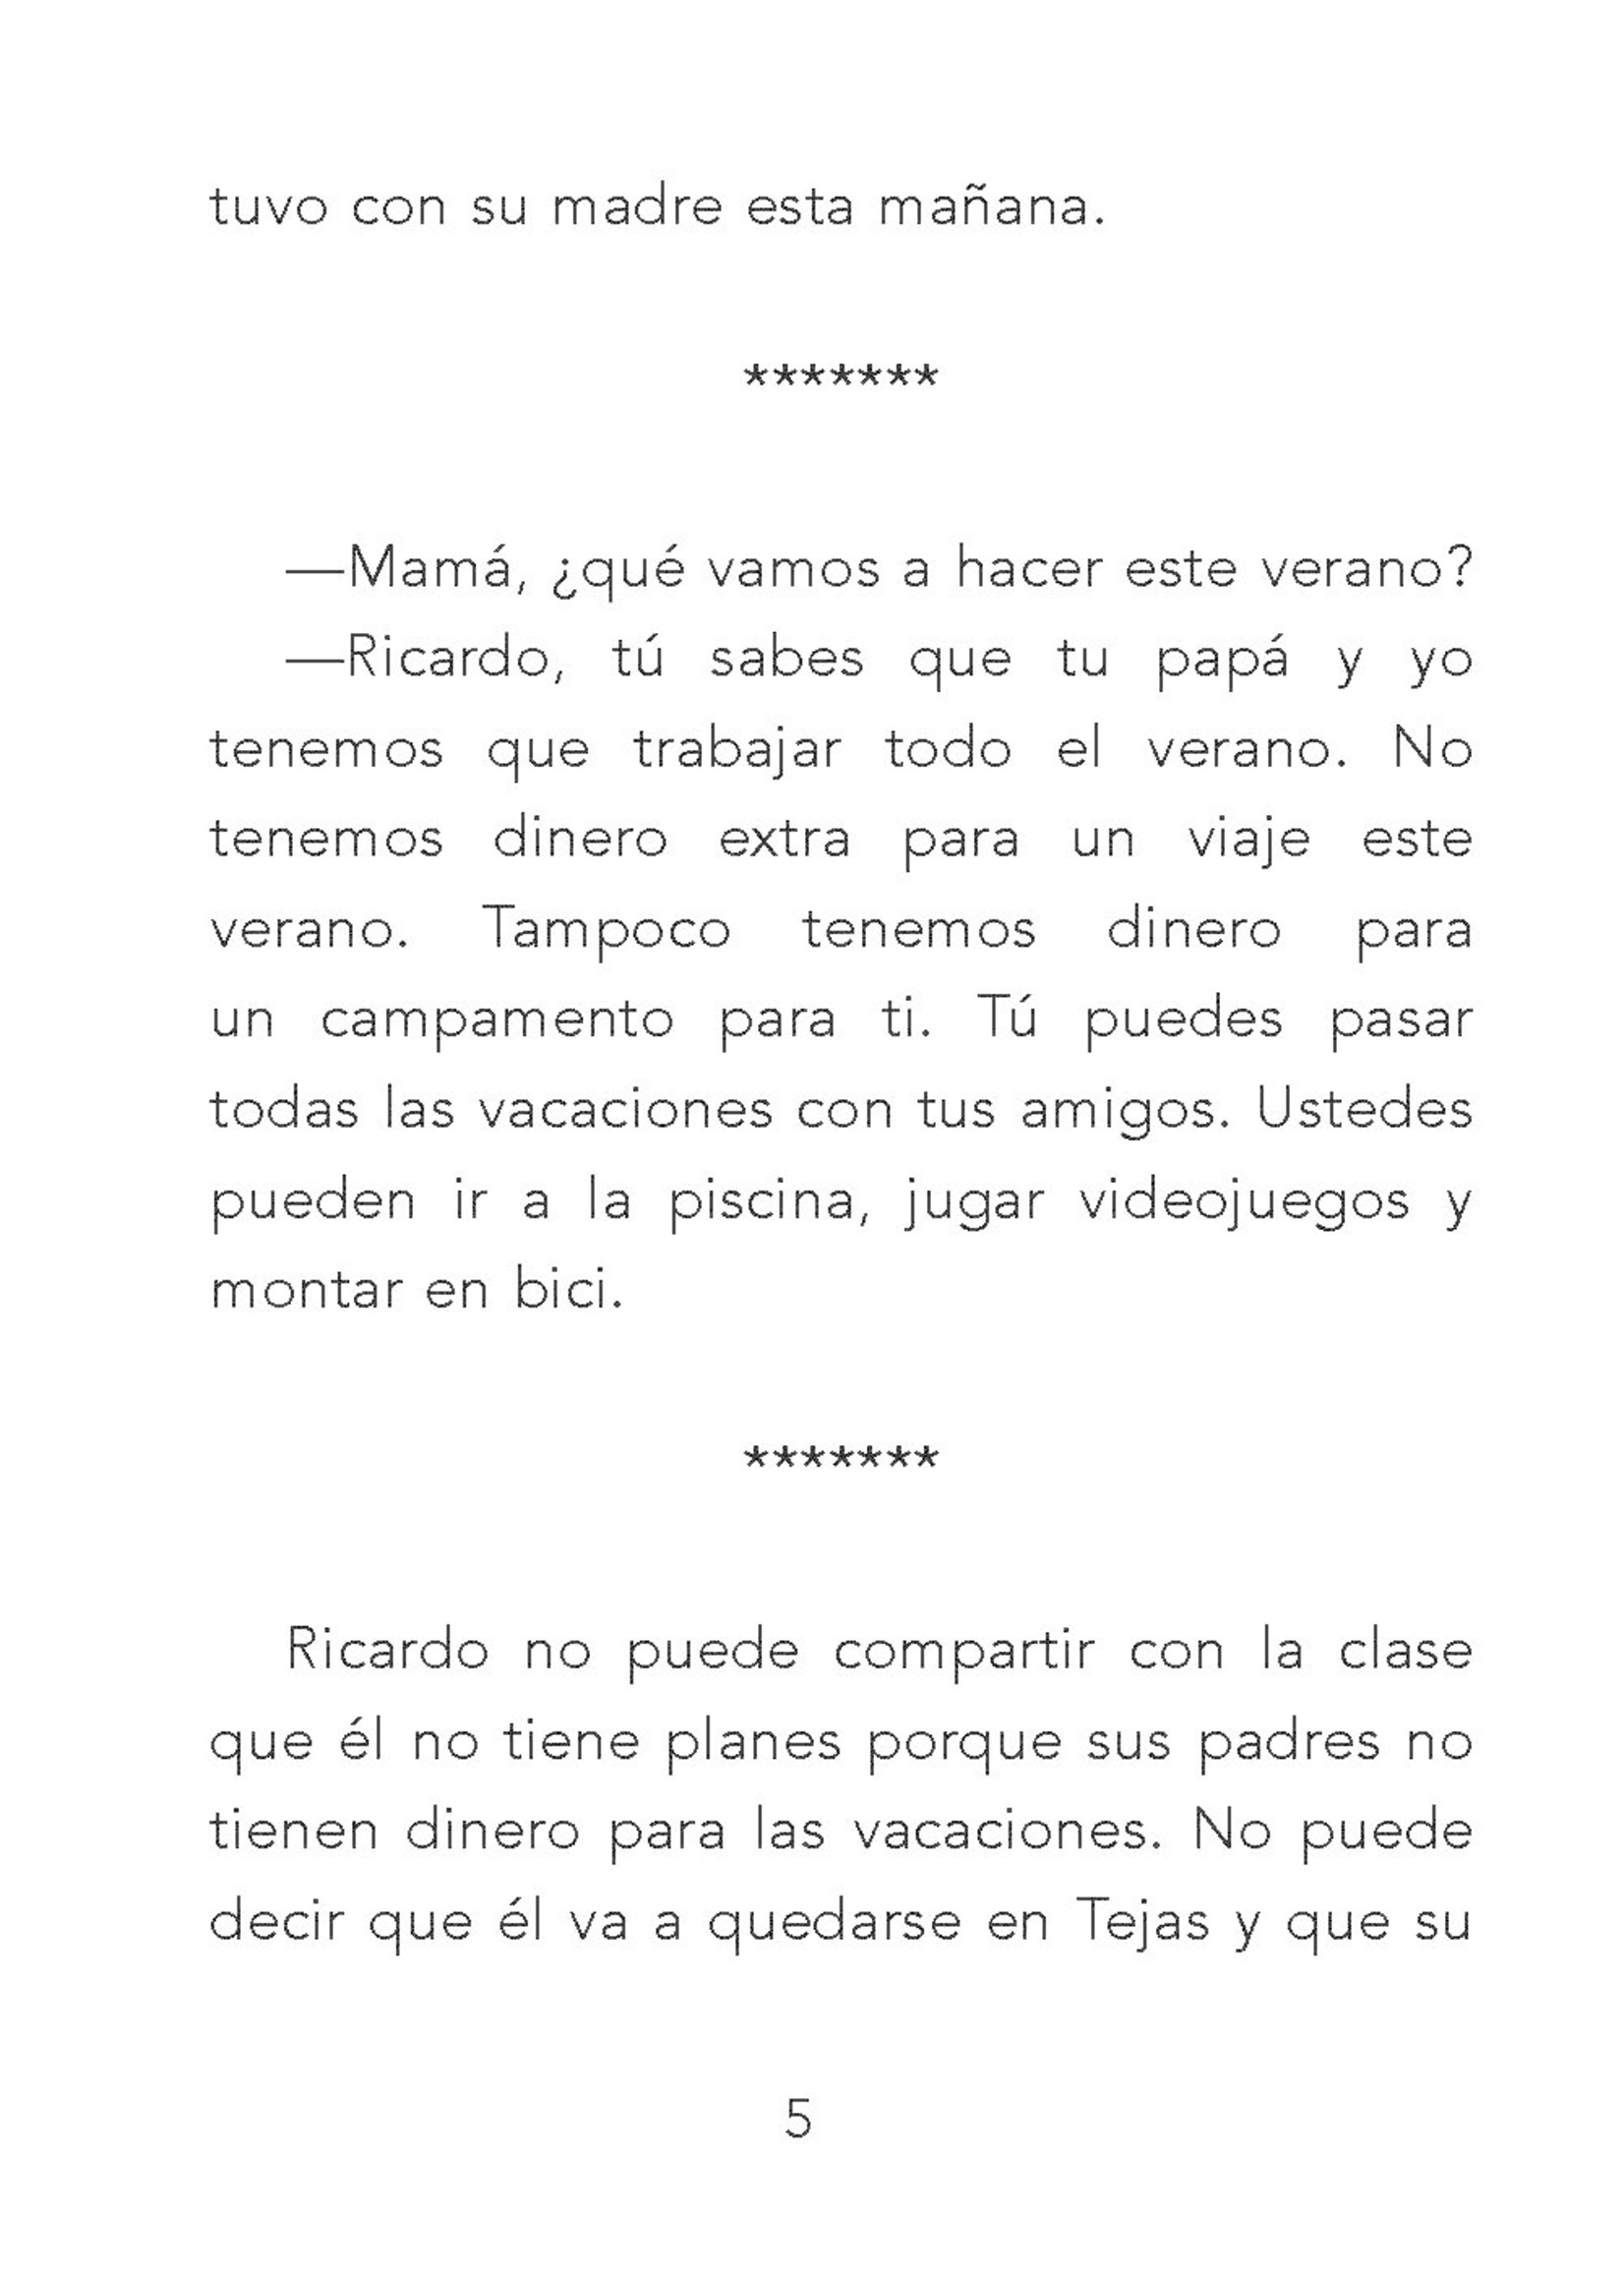 El verano de Ricardo